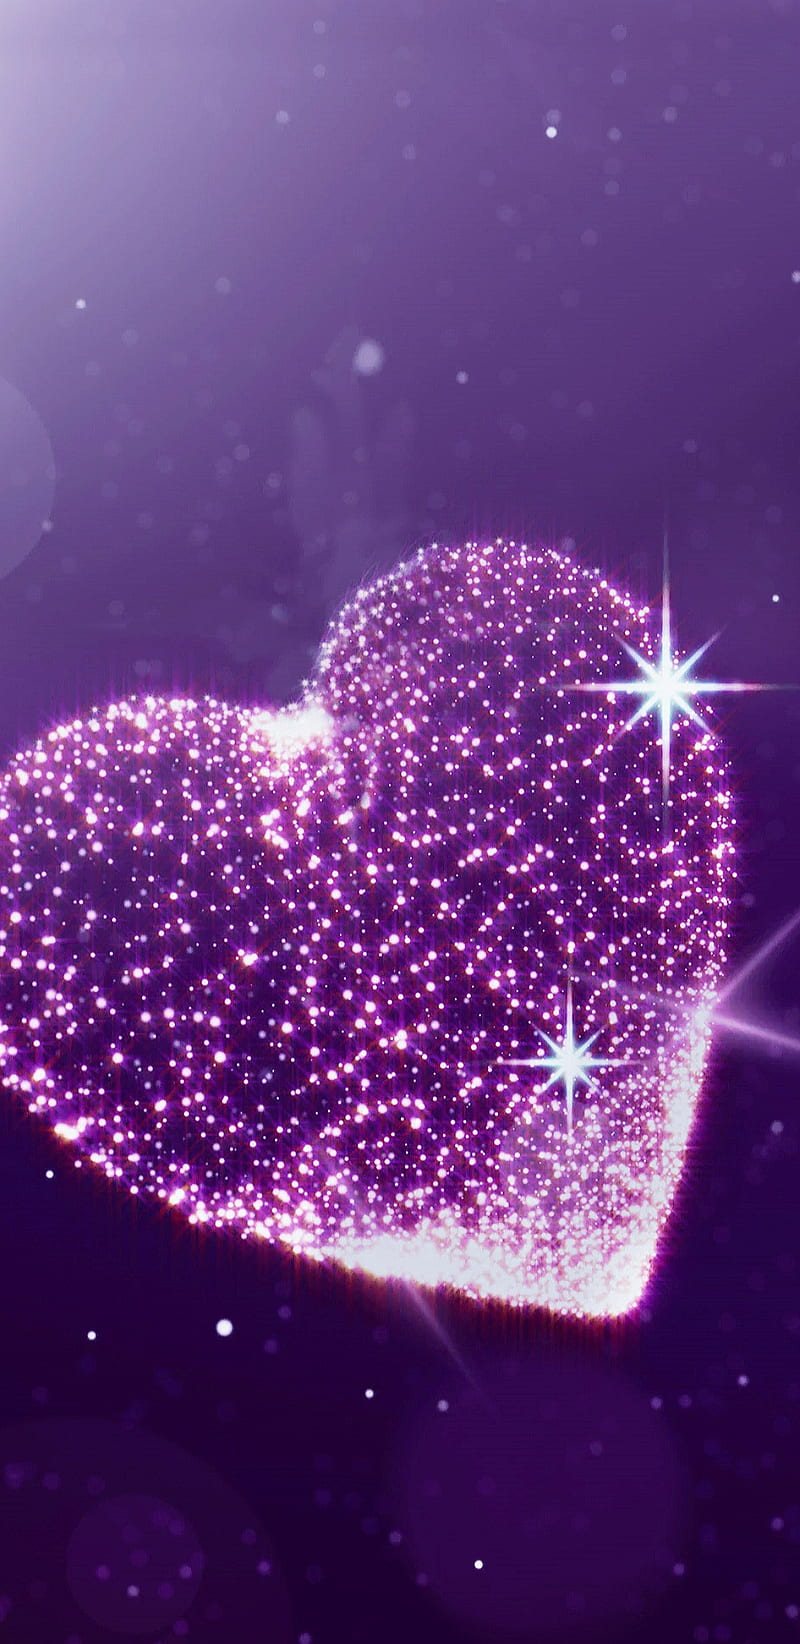 Sparkle Heart mang đến sự rực rỡ, lấp lánh của tình yêu và sự kiêu hãnh. Hãy cùng nhìn ngắm những hạt ánh sáng phản chiếu từ trái tim và cảm nhận cuộc sống tràn đầy niềm vui.